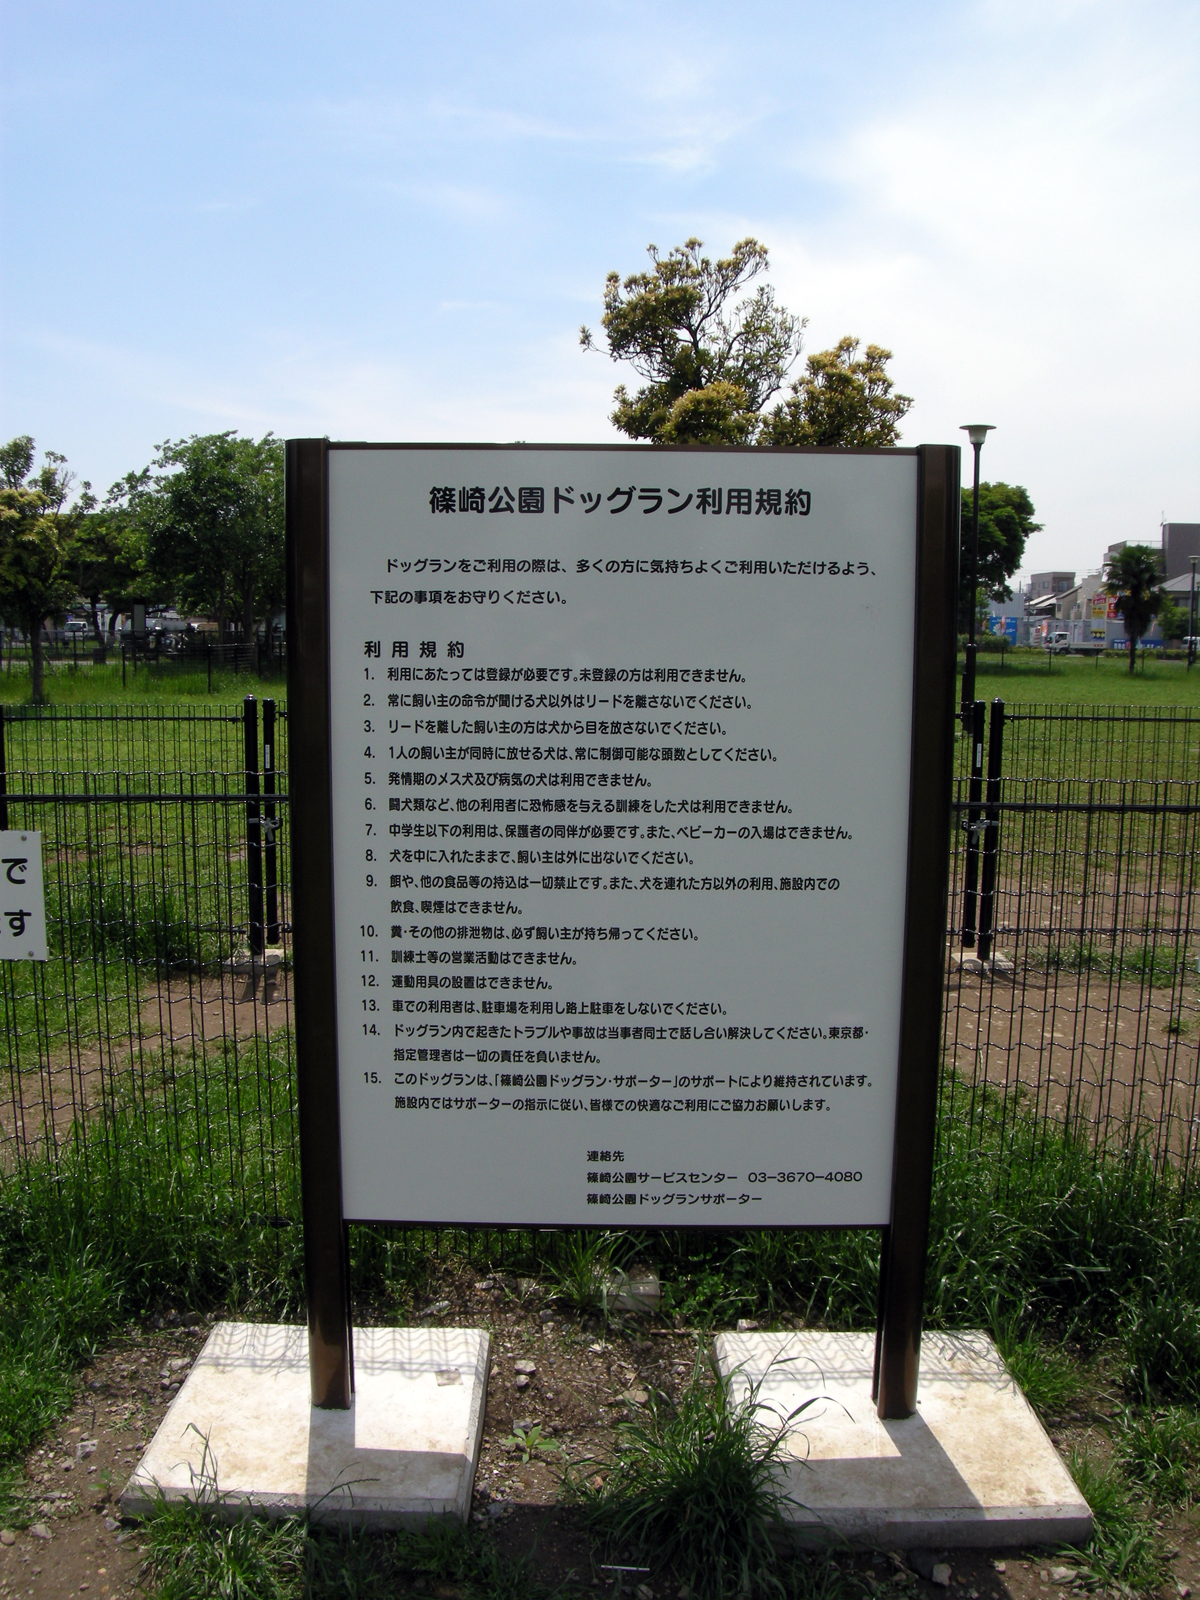 都立篠崎公園のドッグラン 中 大型犬エリアと小型犬エリア 360度写真あり 江戸川フォトライブラリー